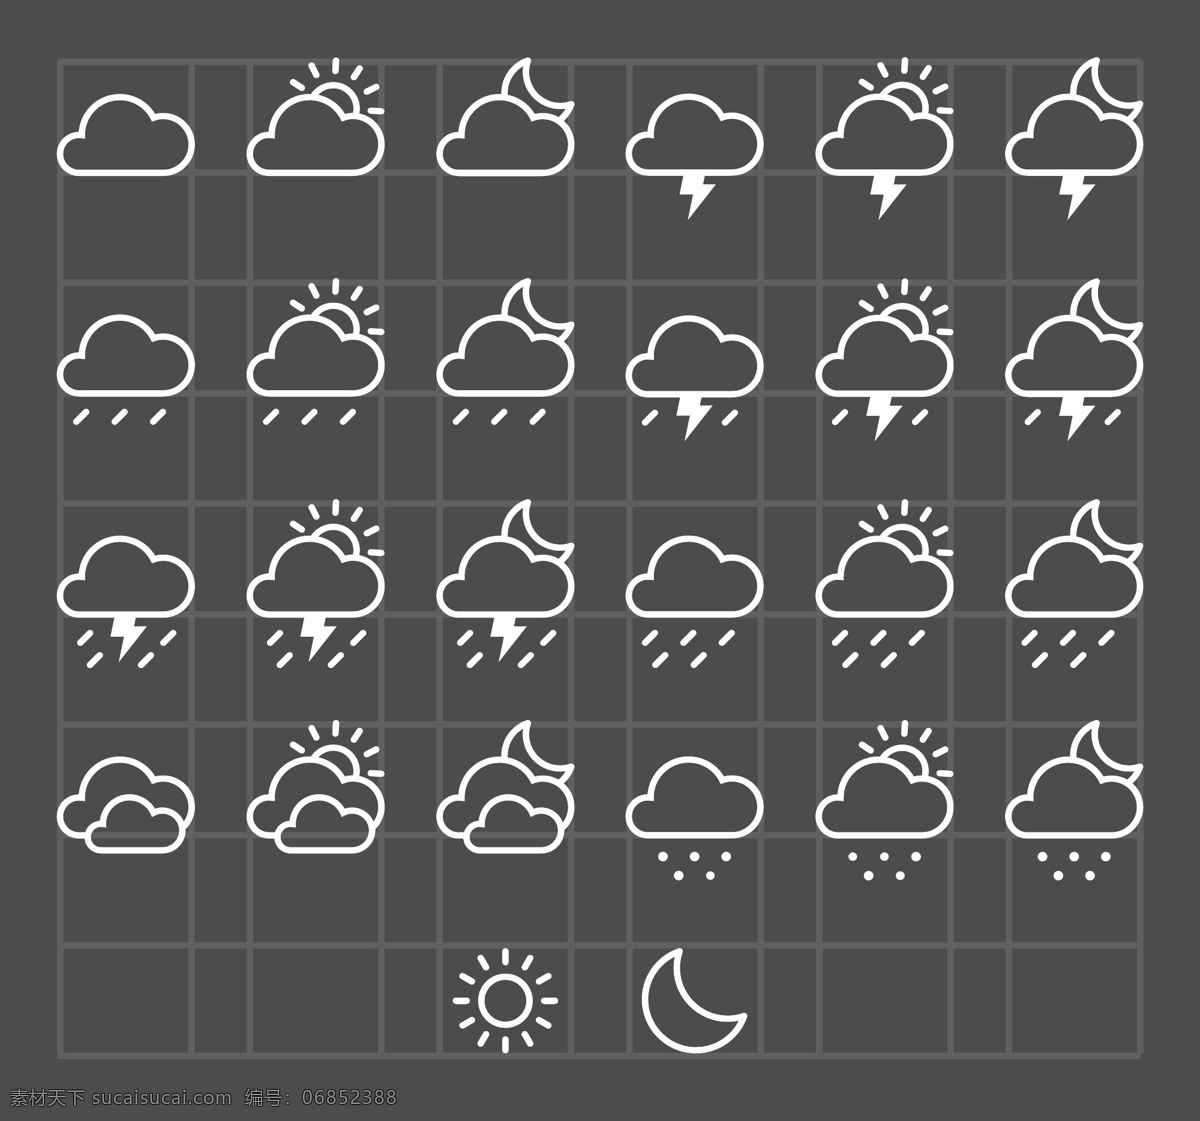 免费天气图标 icons 天气 天气贴 吊牌 实用 网络 阴雨 晴天 白天 月亮